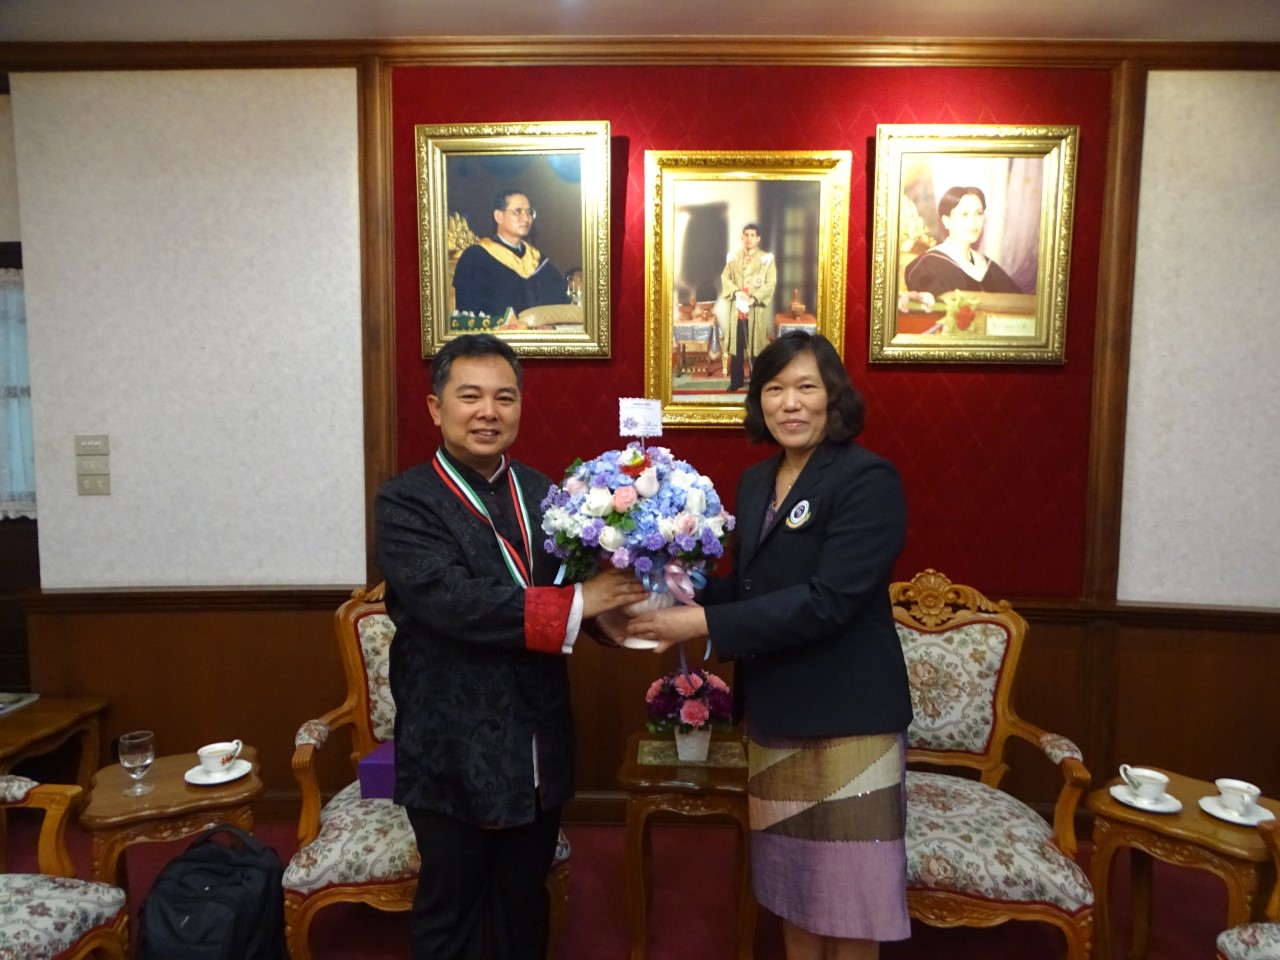 
	ร่วมแสดงความยินดีแก่ที่ปรึกษาสถาบันไทยศึกษาแห่งมณฑลเสฉวน
